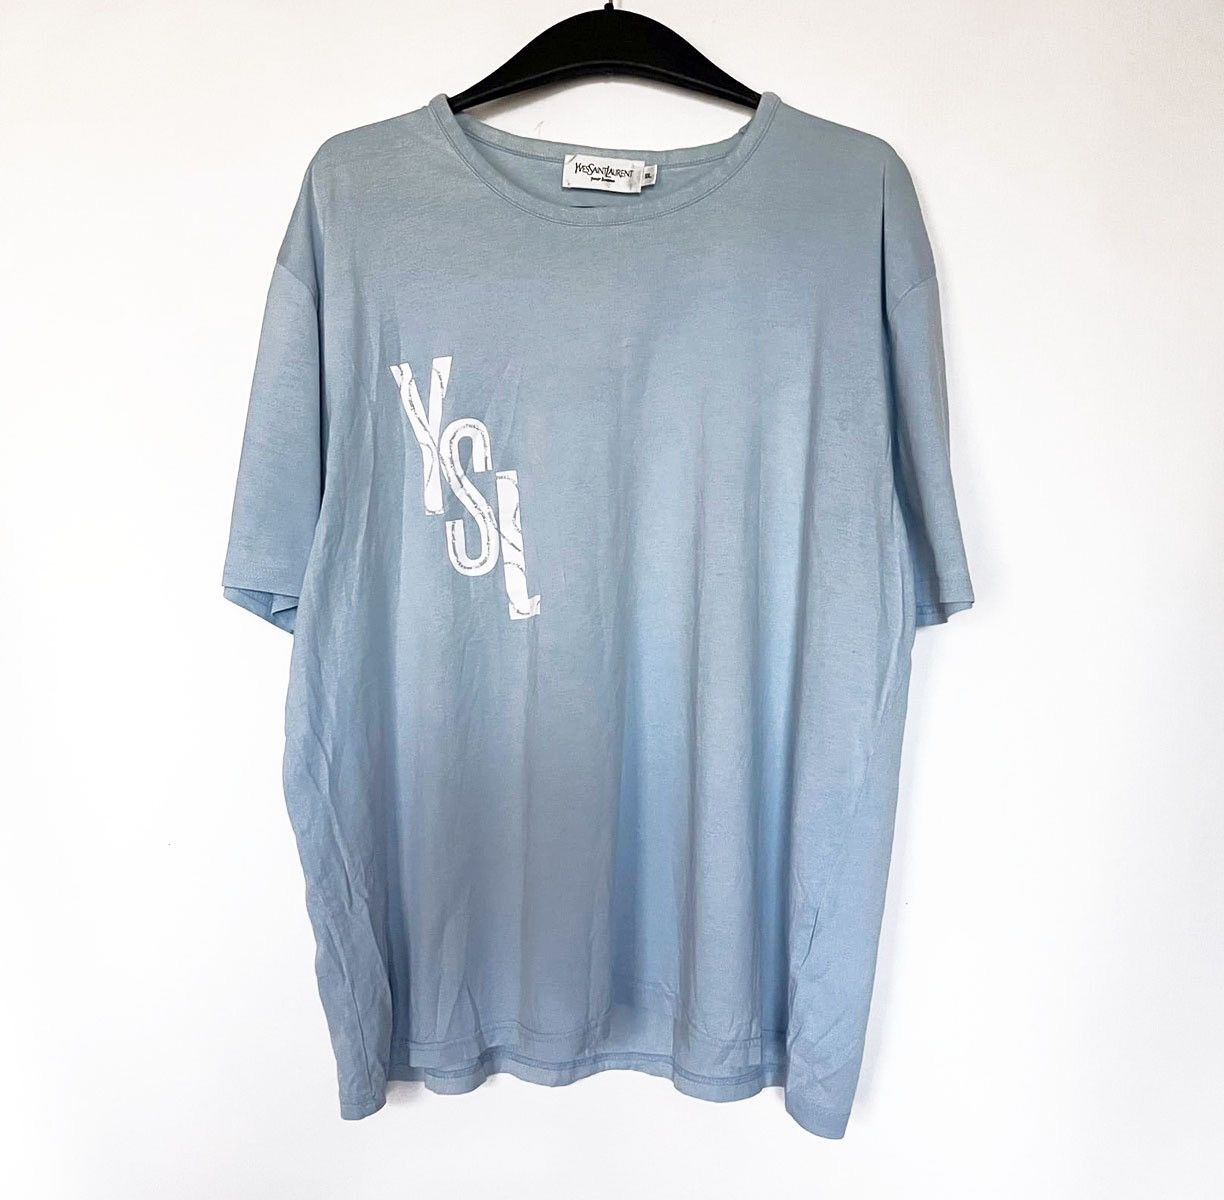 Yves Saint Laurent Yves Saint Laurent t-shirt | Grailed